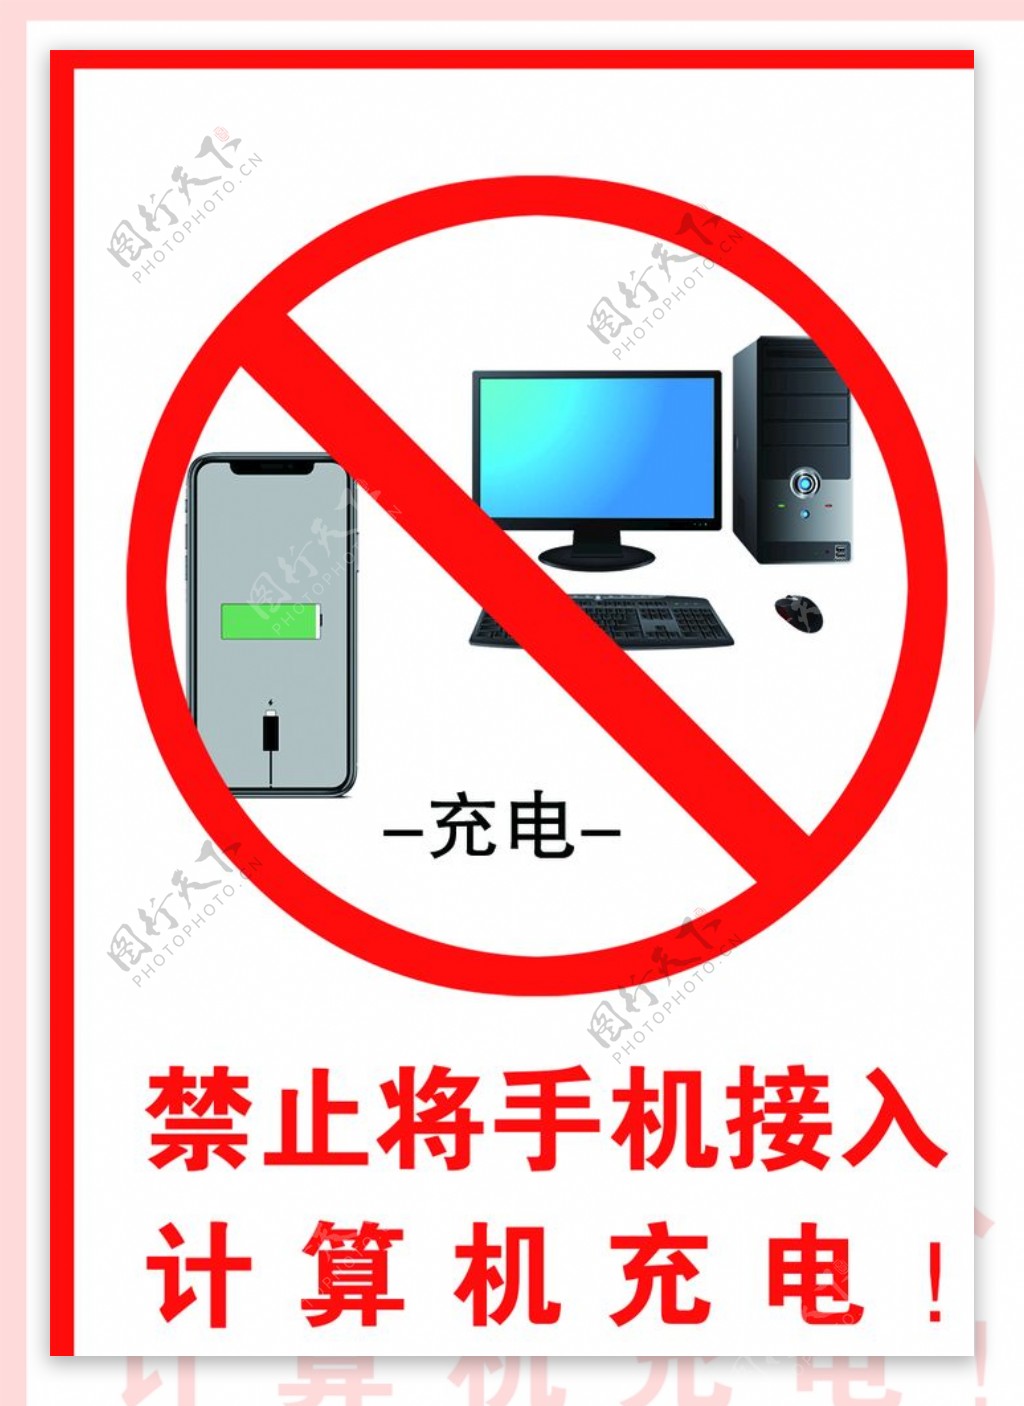 禁止将手机接入计算机充电